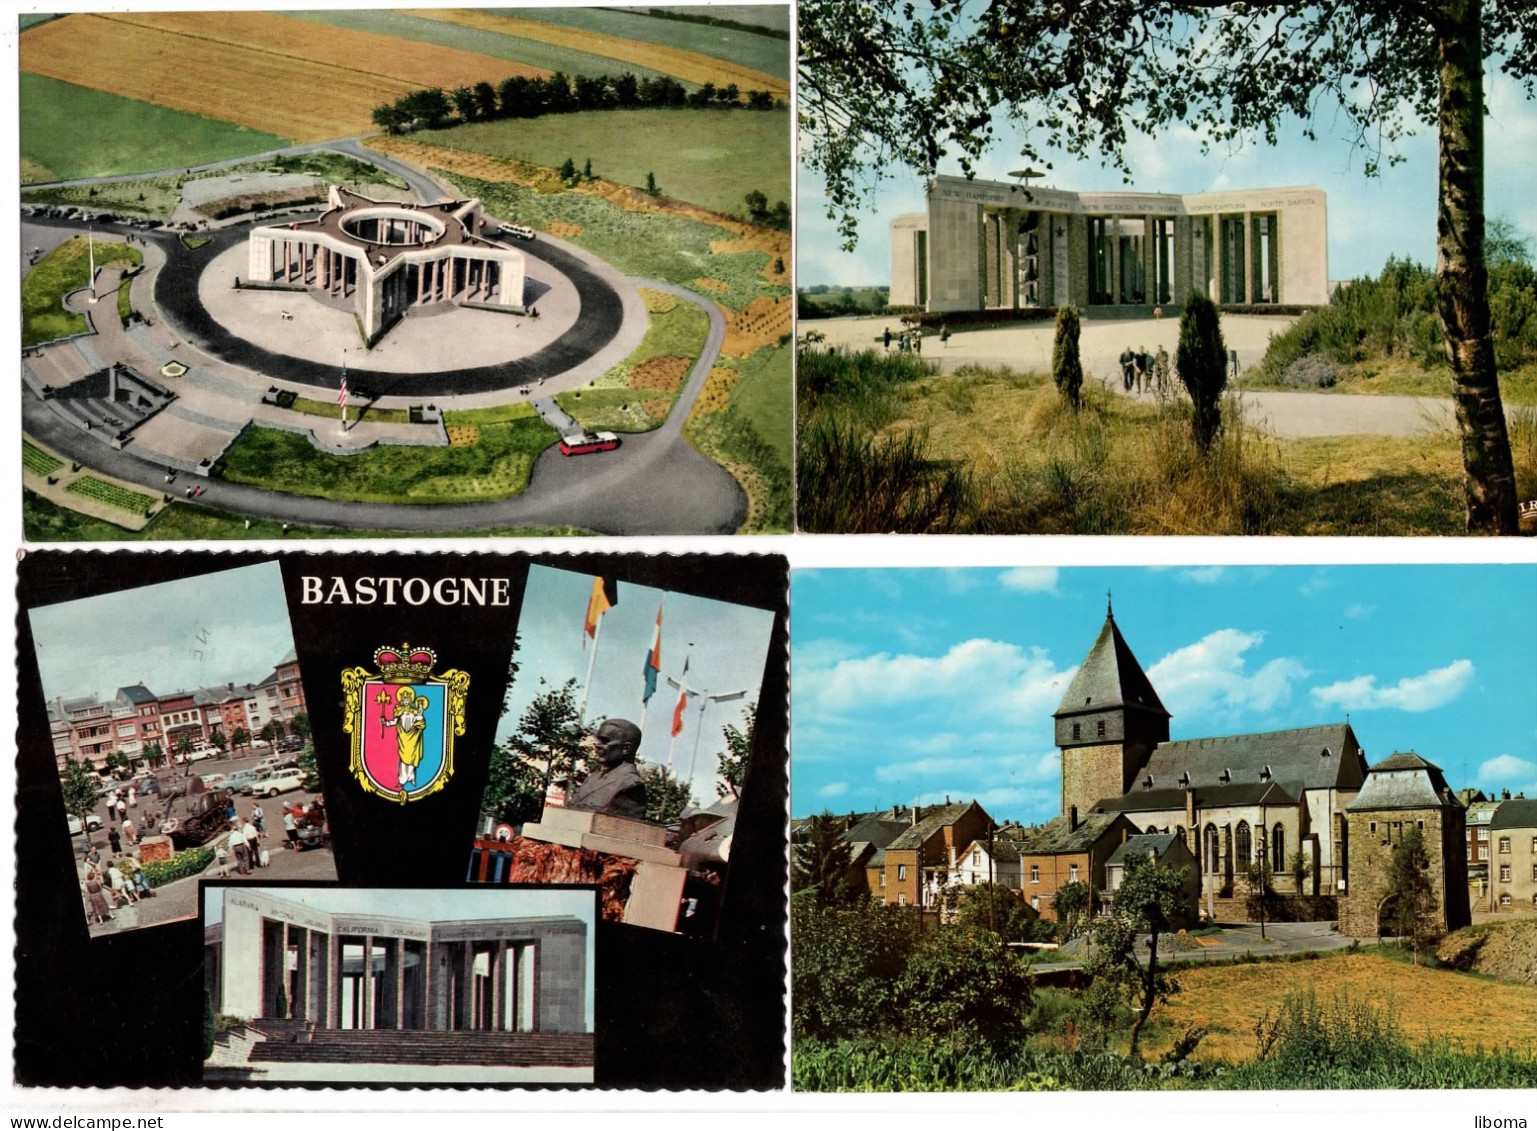 Lot de 60 cartes postales Bastogne